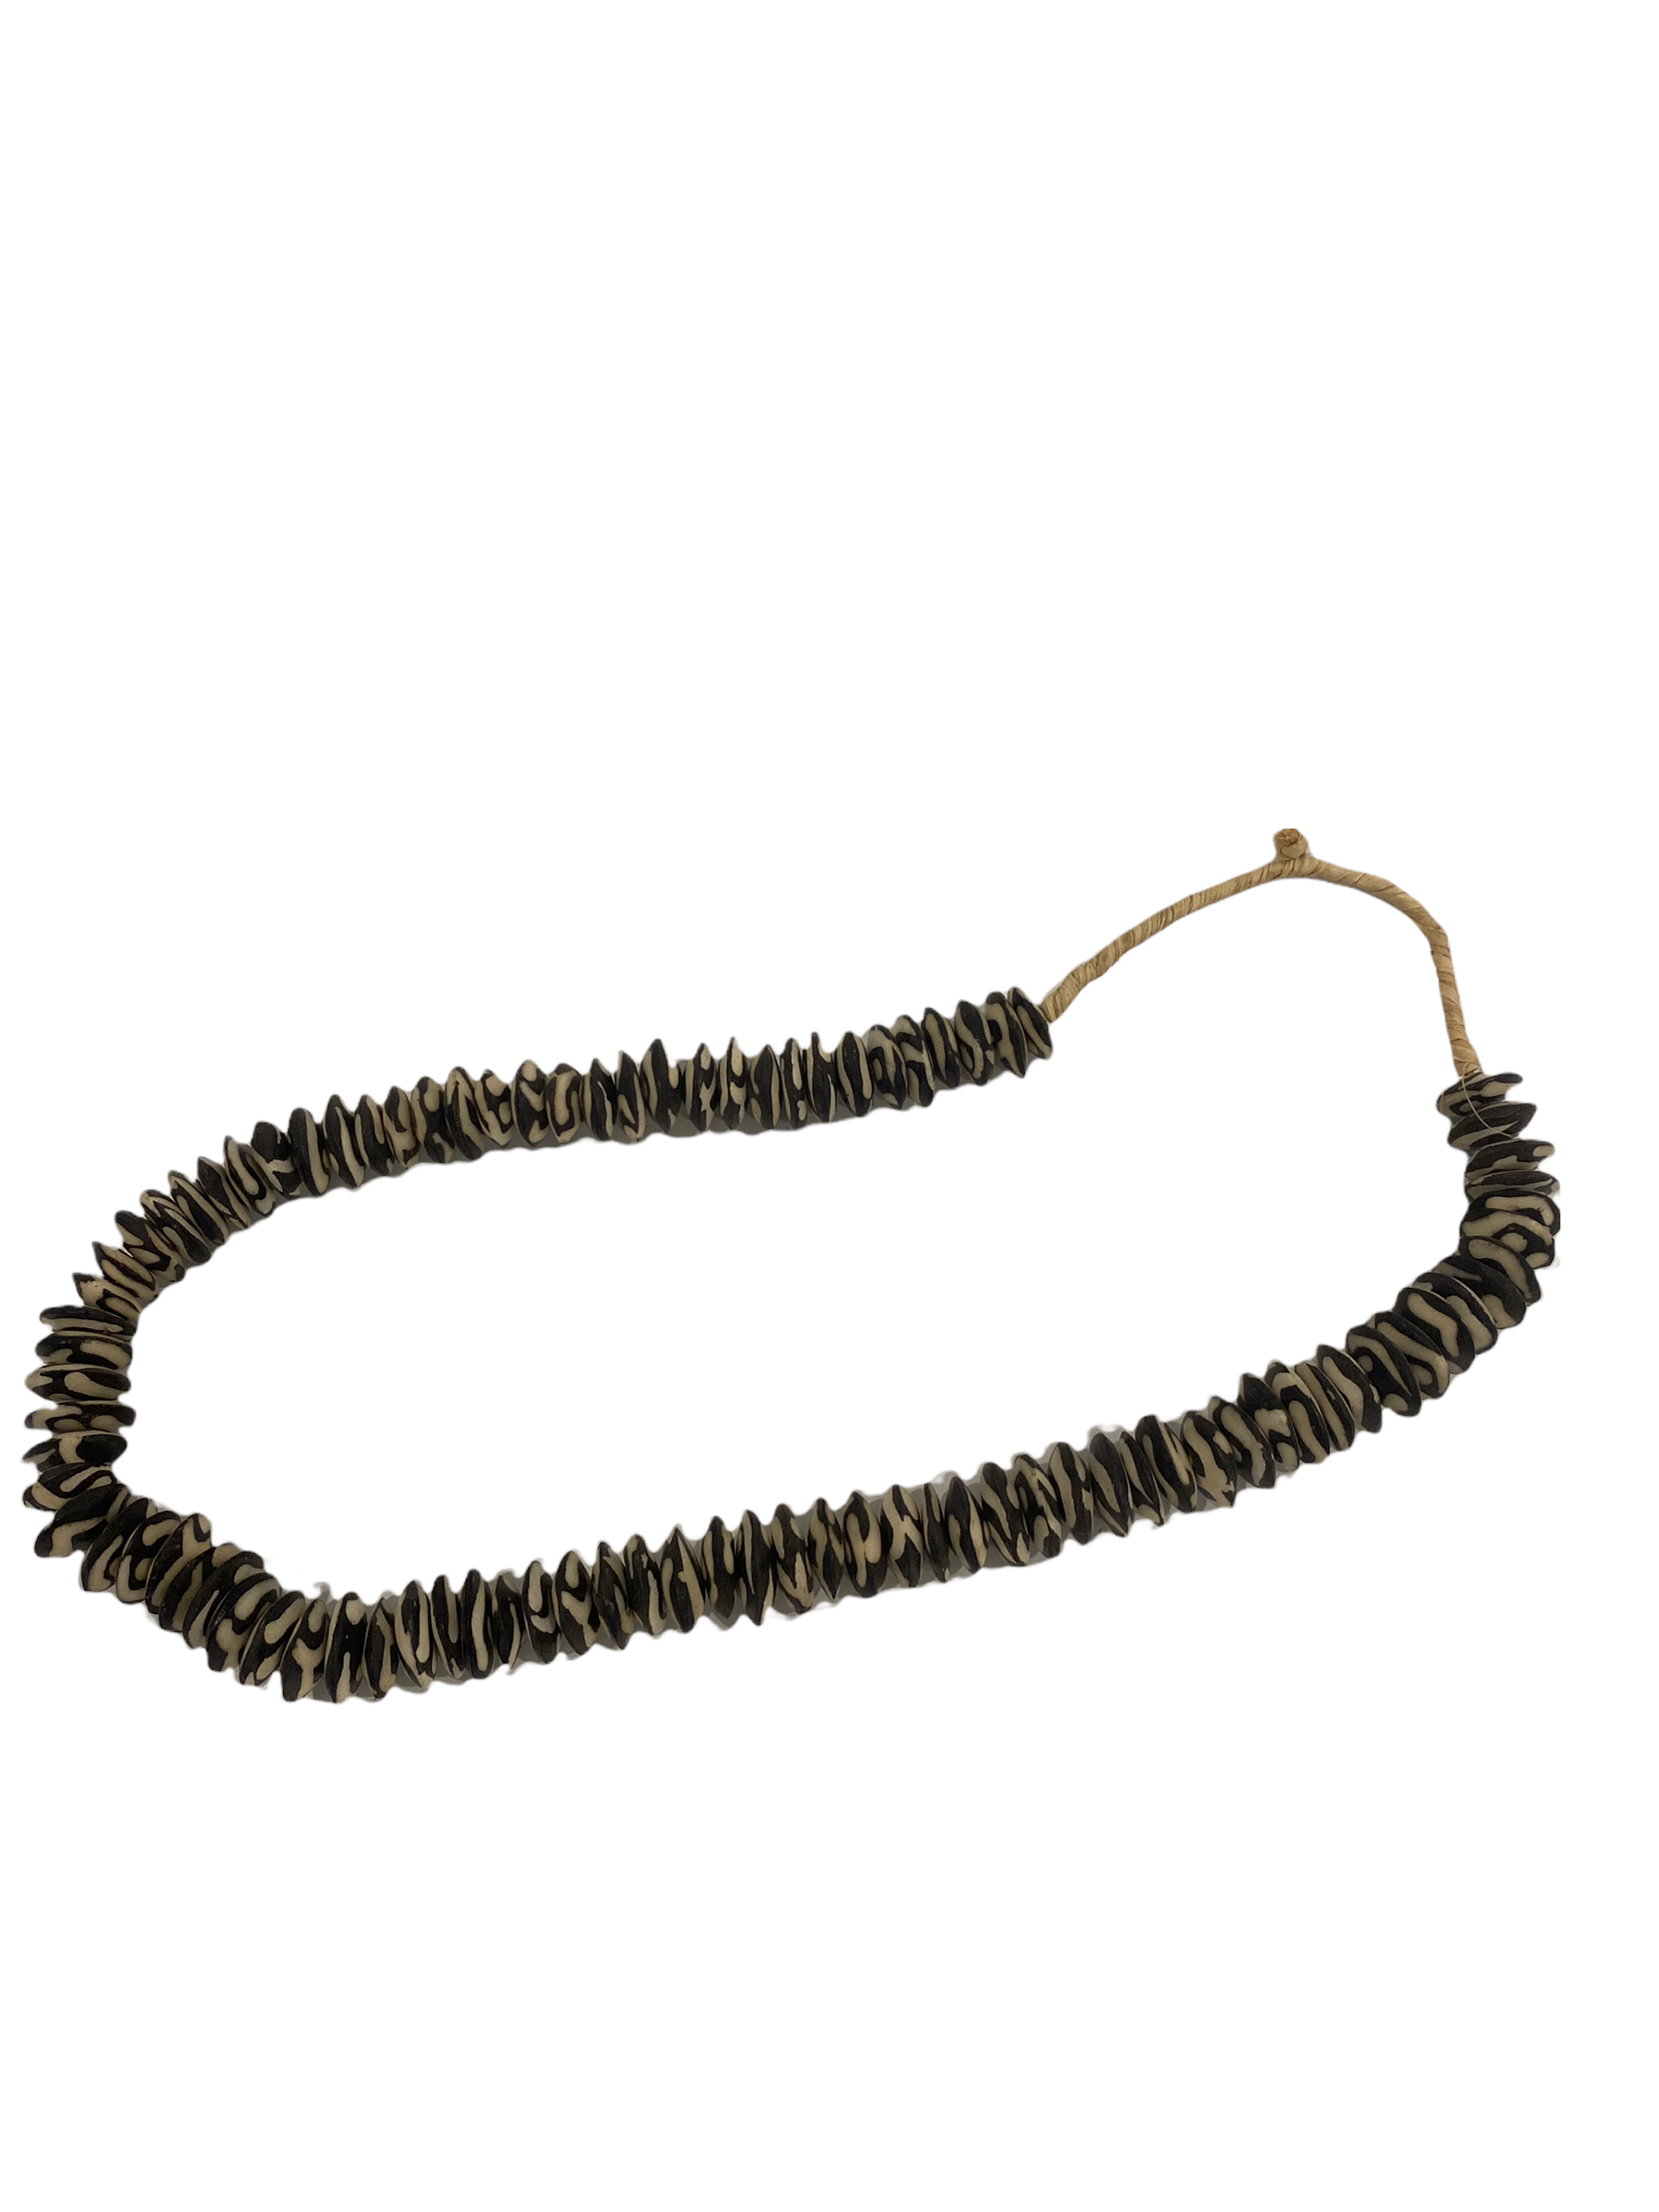 Kenya Beads Necklace  - Flat beads brown/white (46.1)